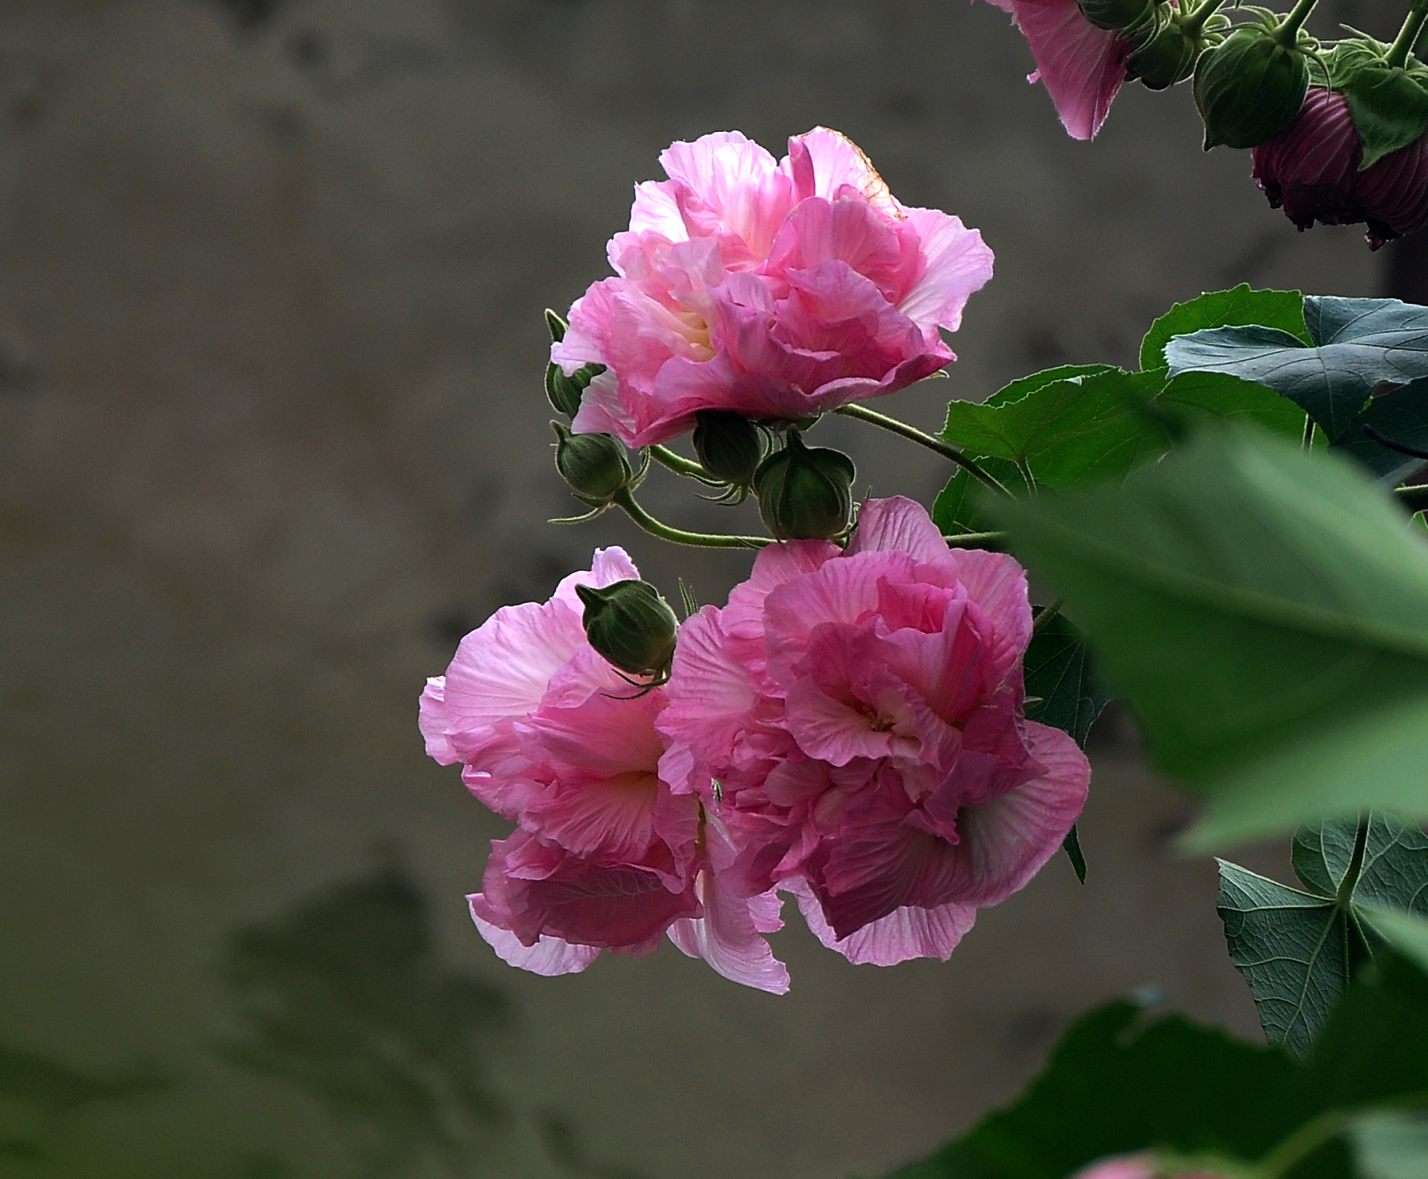 盛开的芙蓉花风景图片桌面壁纸_植物图片_素材吧